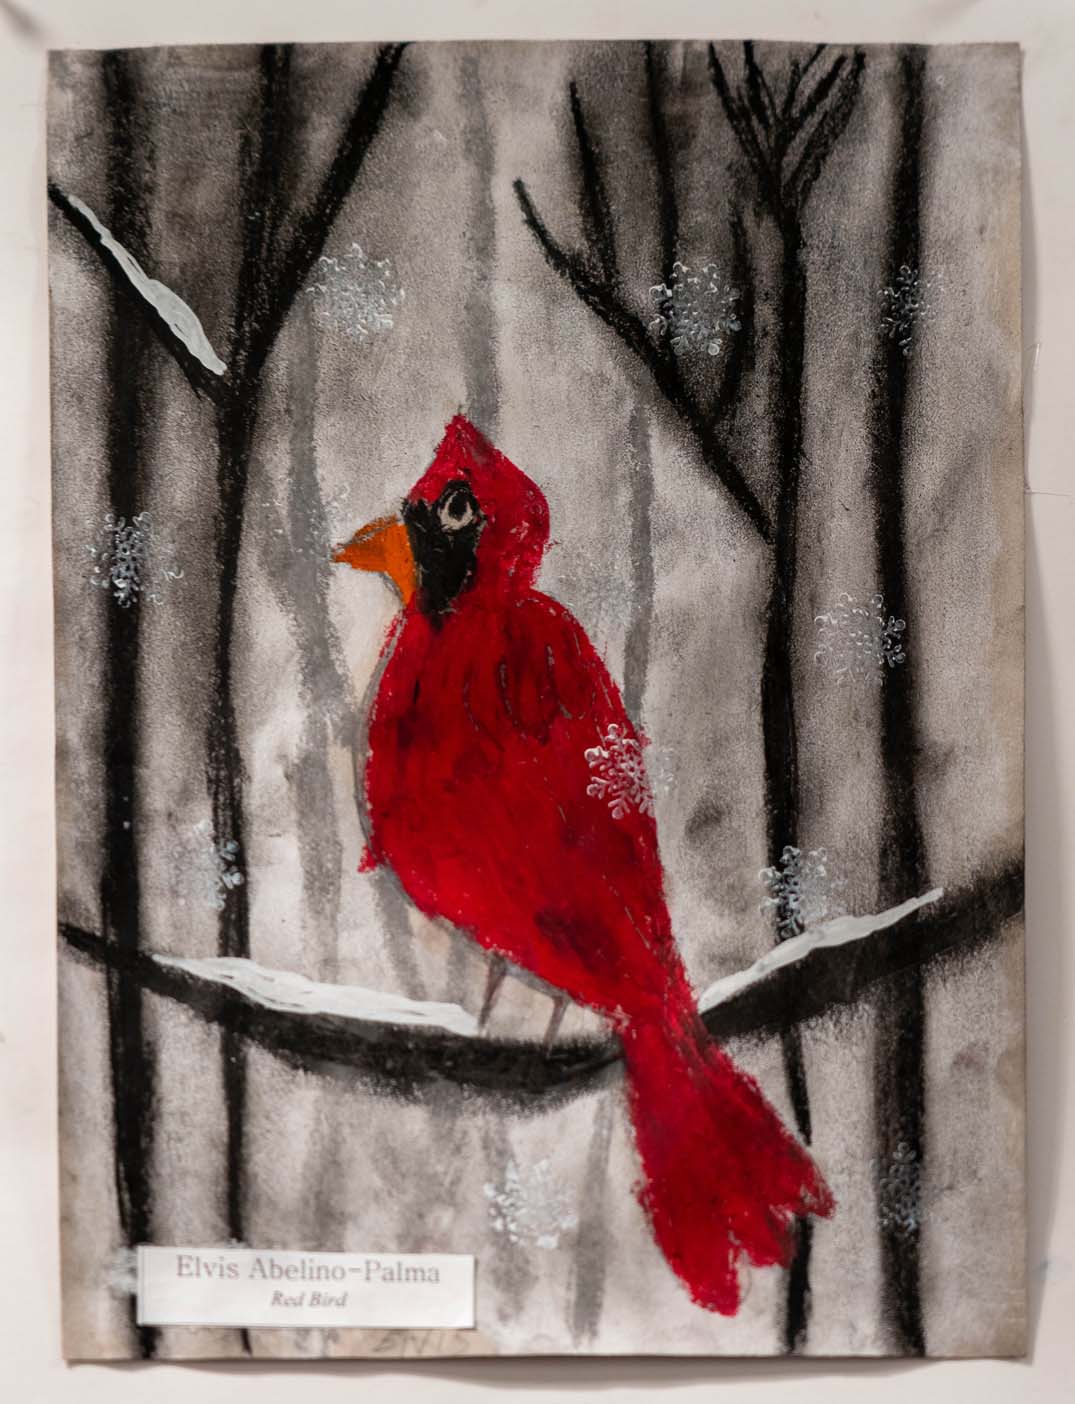 cardinal painting